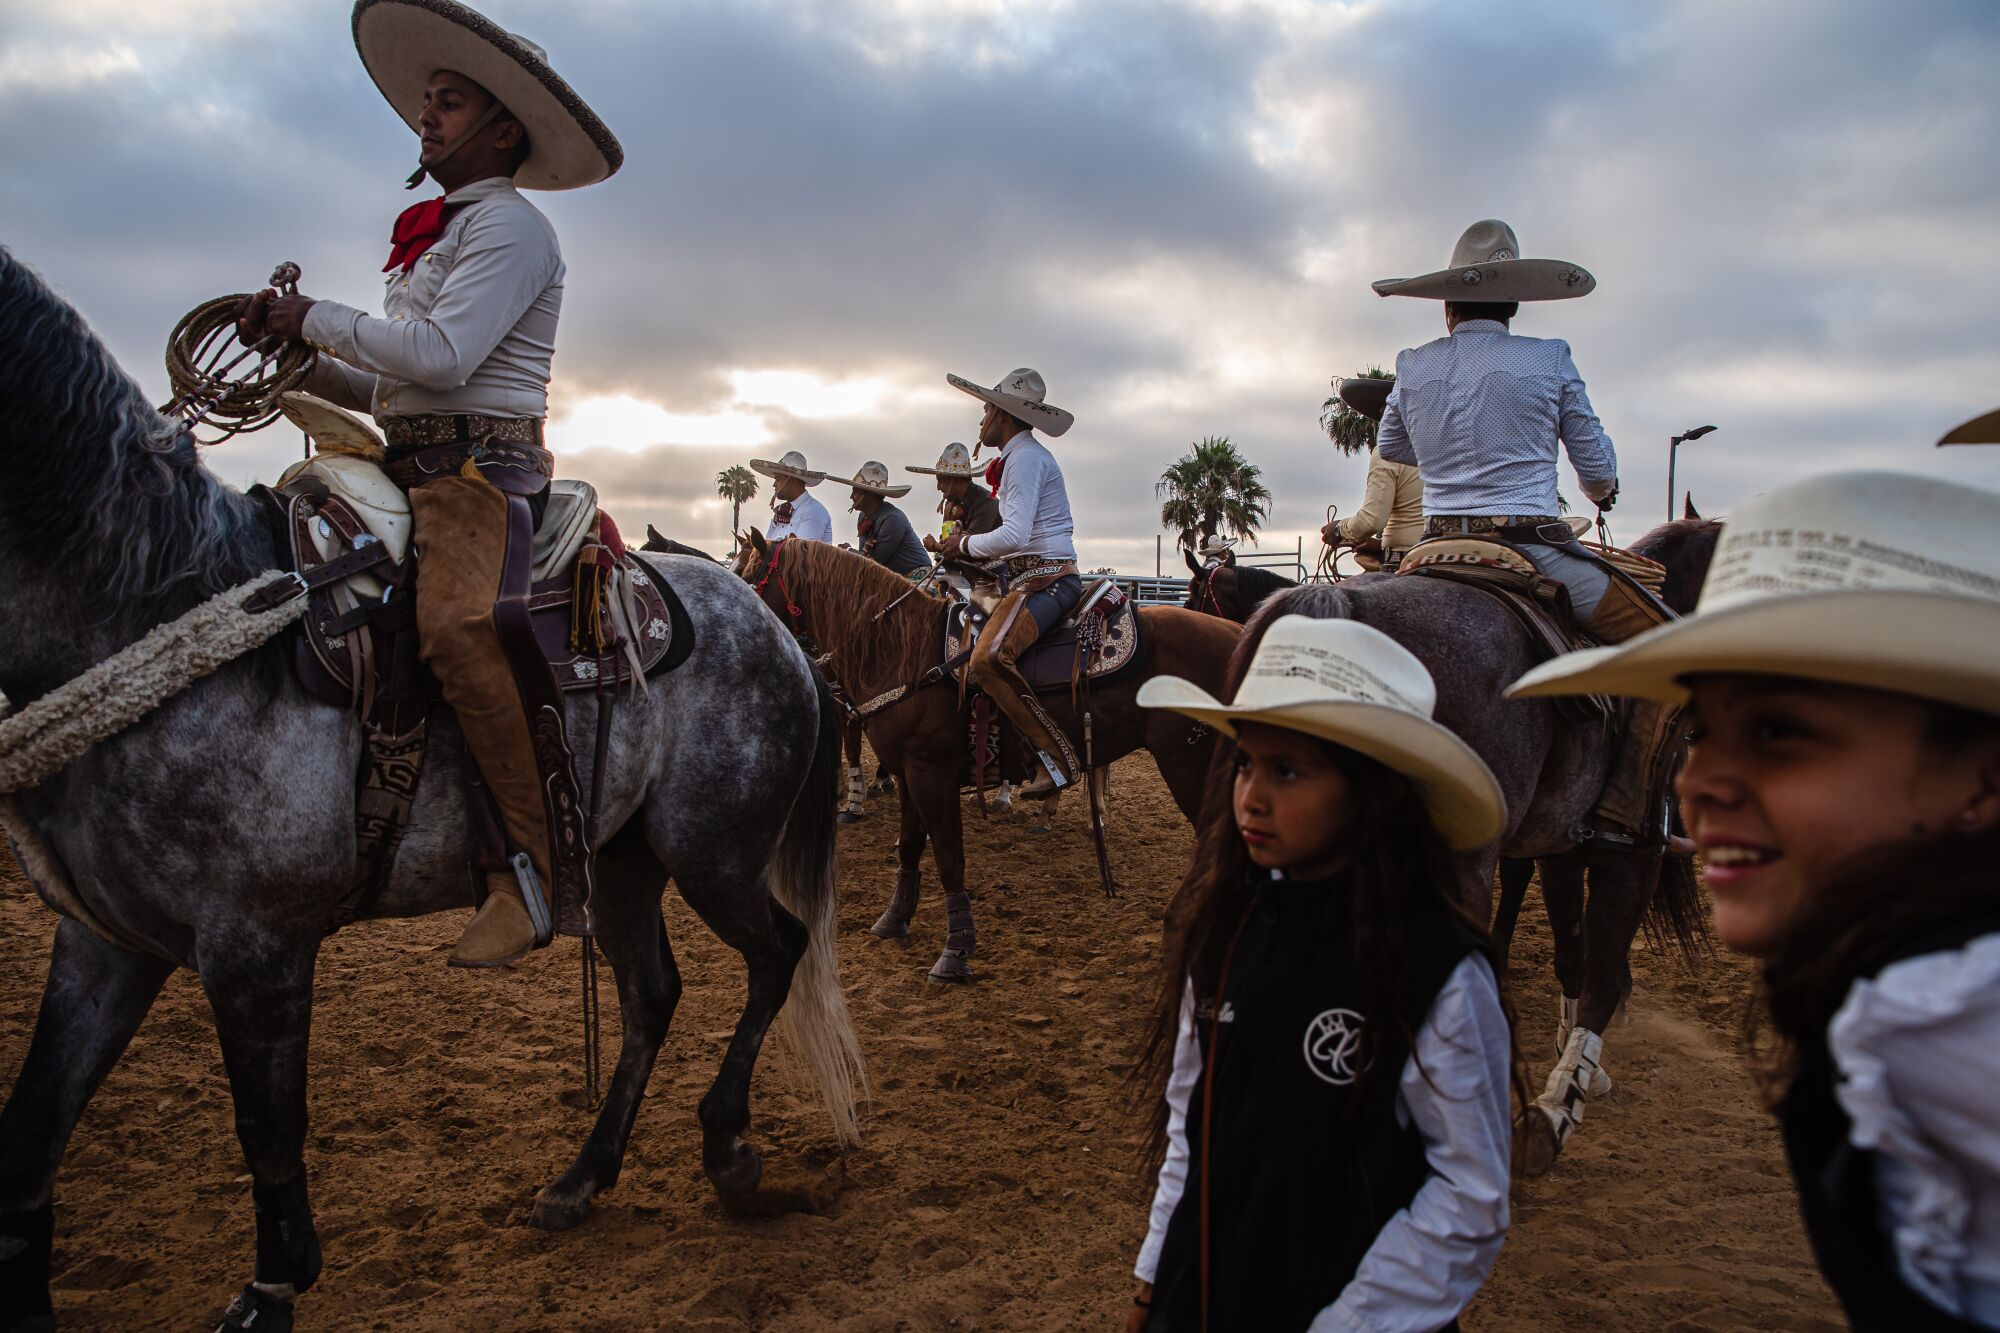 Vestirse de charro, es vestirse de Mexico': Los charros de San Diego  preservan el pasado vaquero de México - Los Angeles Times